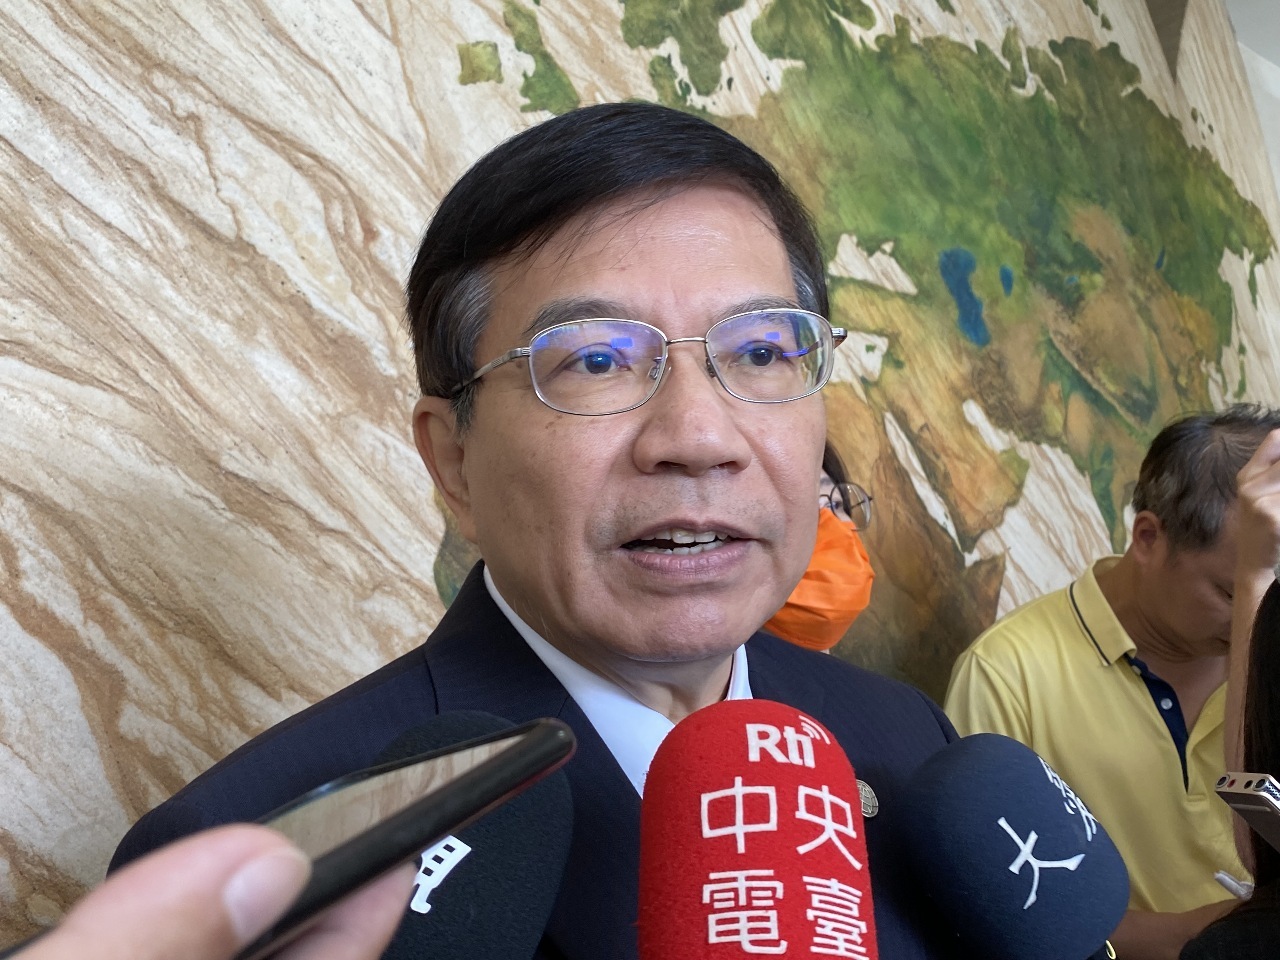 Bộ trưởng Bộ Giao thông Vương Quốc Tài phản hồi bày tỏ, phía Đài Loan đã bày tỏ thiện chí khôi phục lại du lịch theo đoàn giữa hai bờ eo biển, mong phía Trung Quốc cũng đưa ra phản hồi thiện chí trong vòng một tháng sắp tới. (Ảnh do PV RTI chụp)